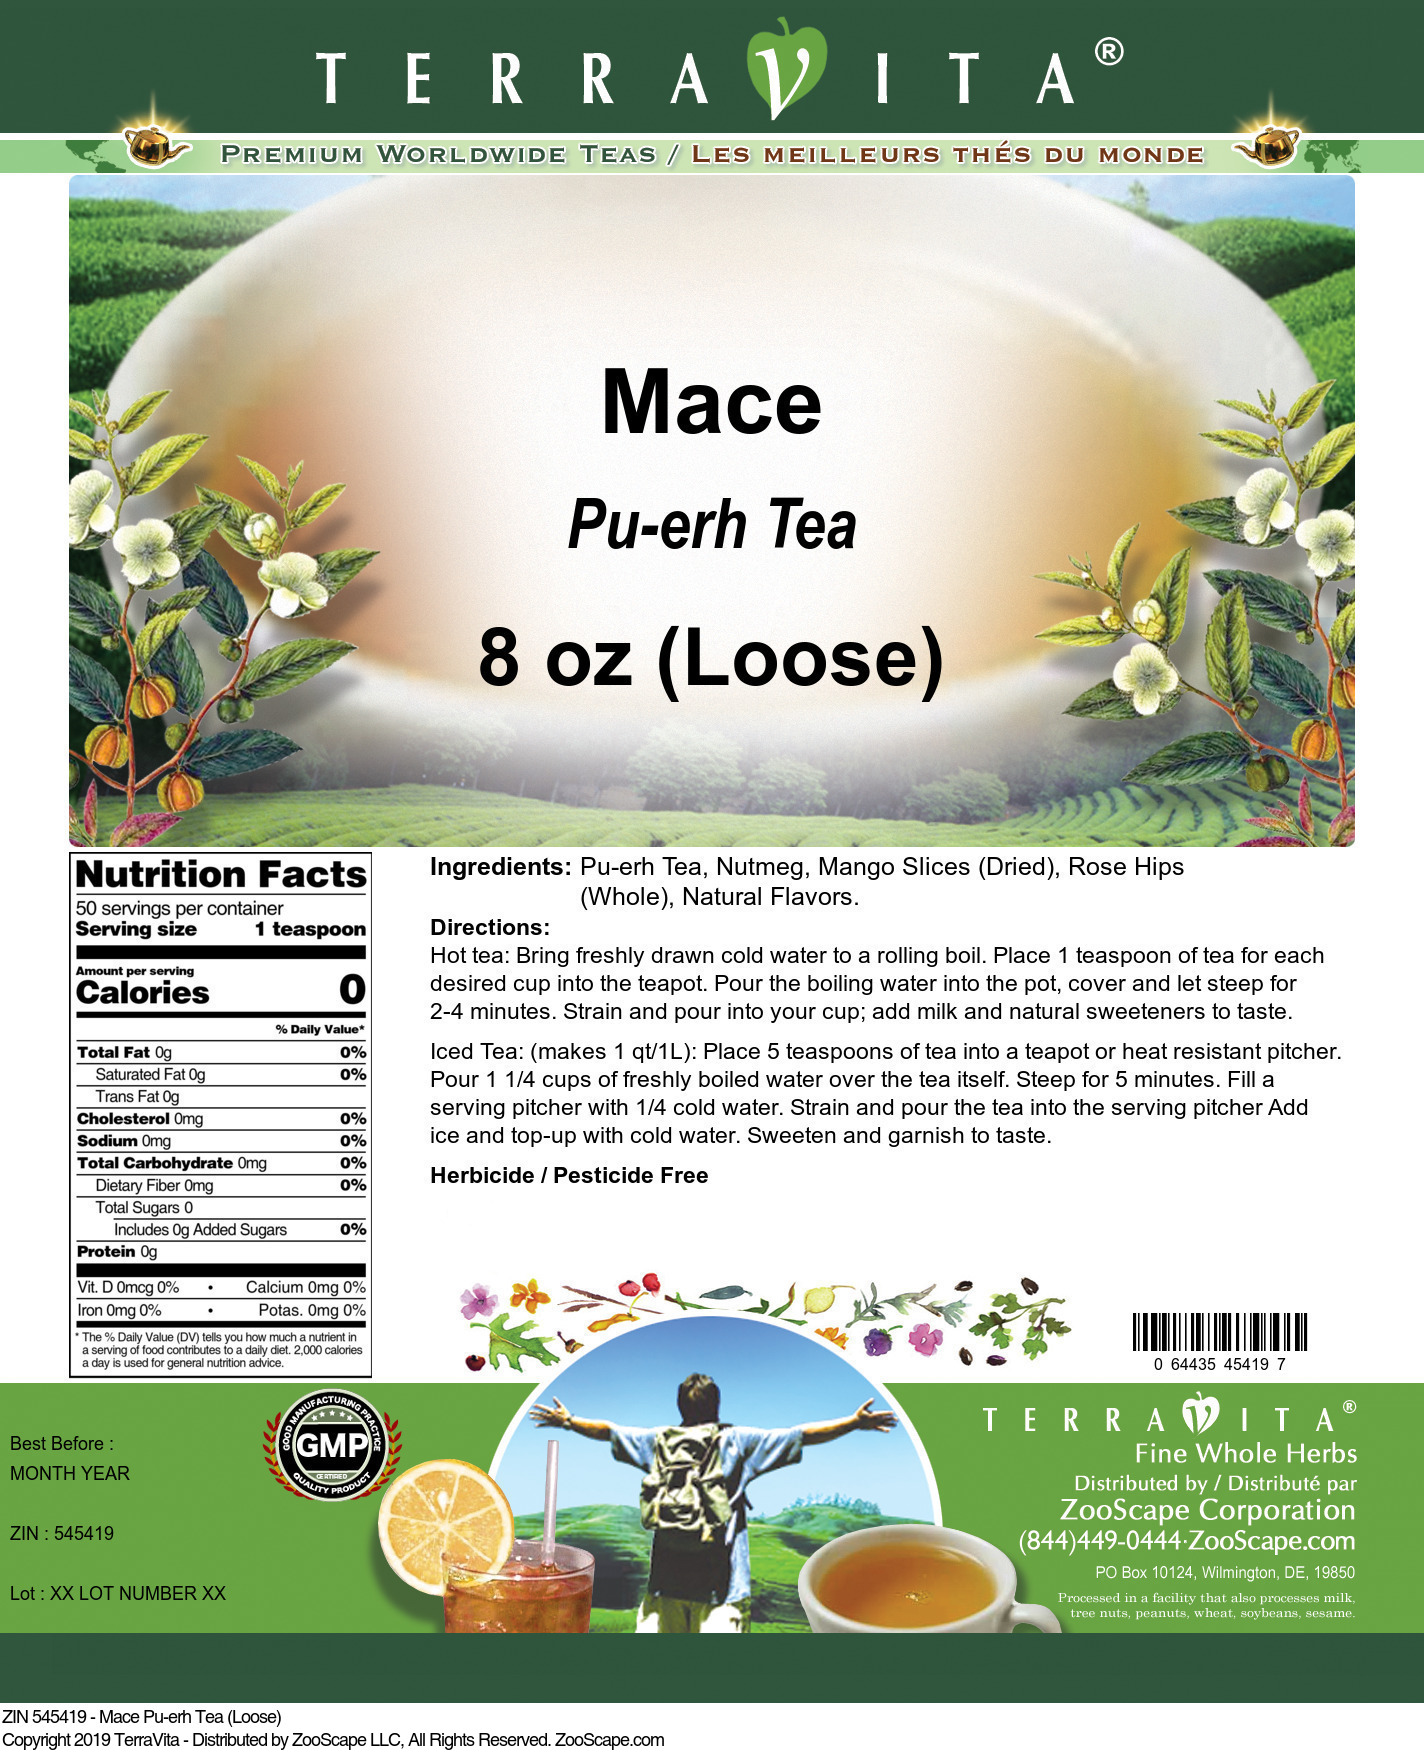 Mace Pu-erh Tea (Loose) - Label